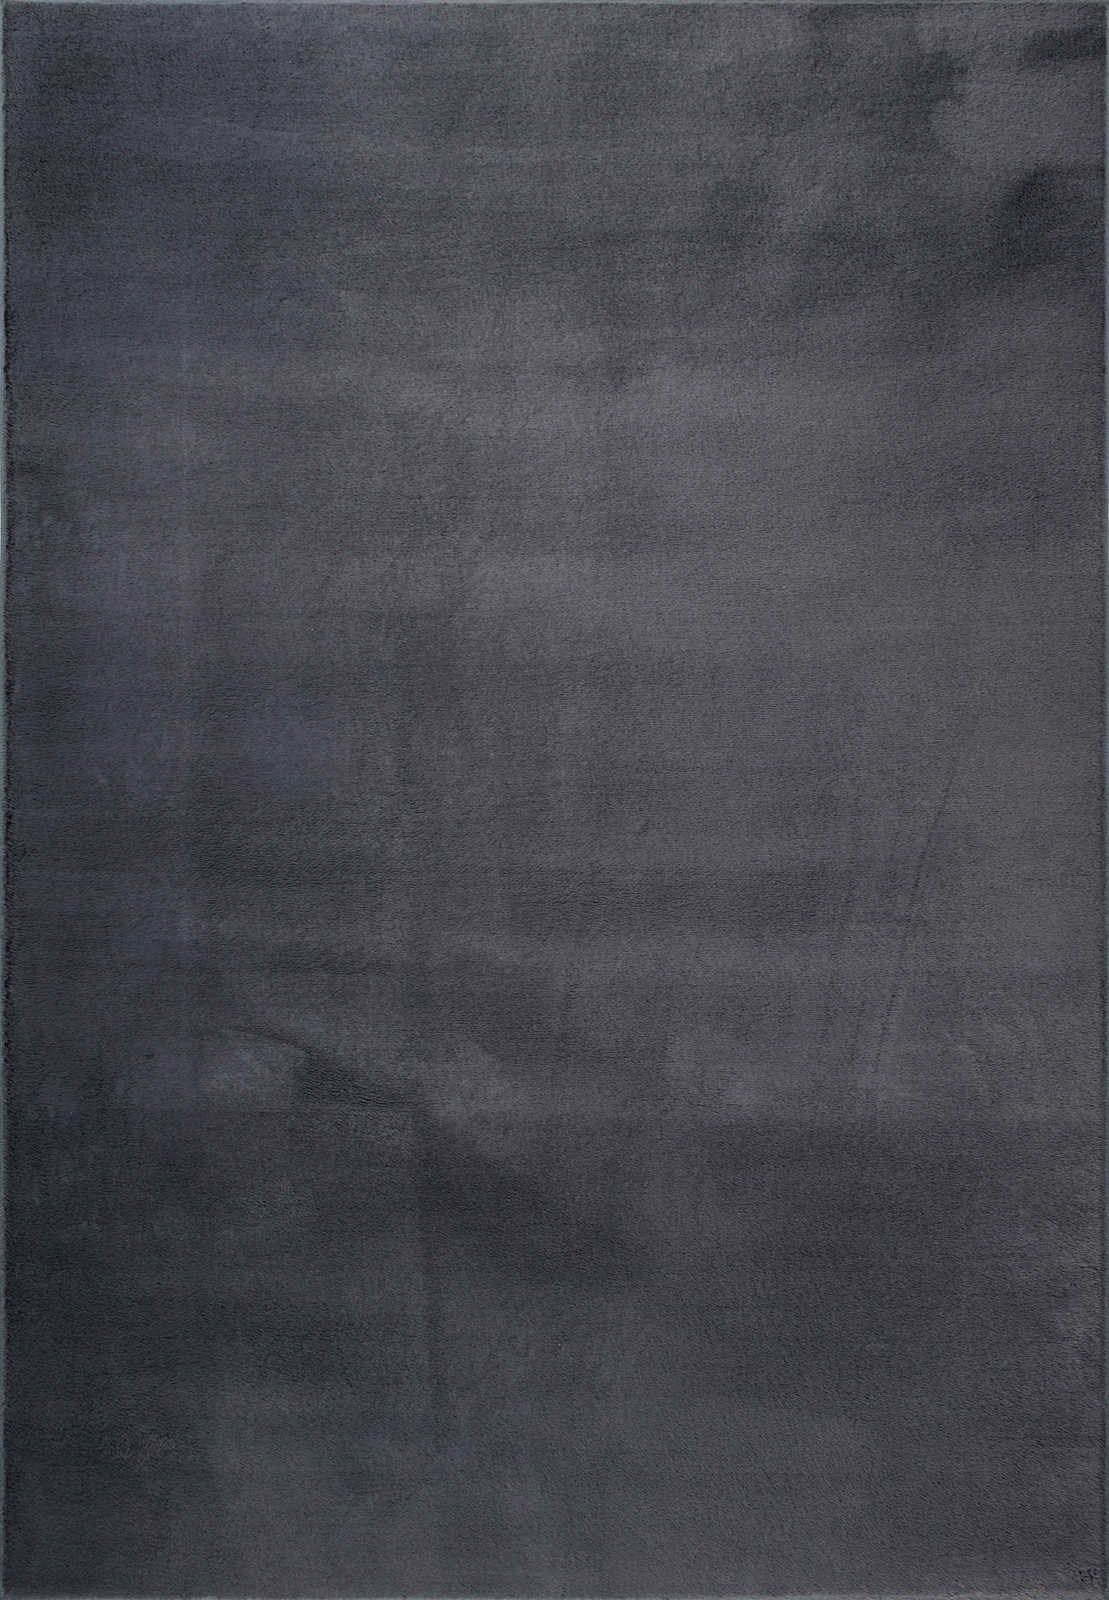             Sanfter Hochflor Teppich in Anthrazit – 100 x 50 cm
        